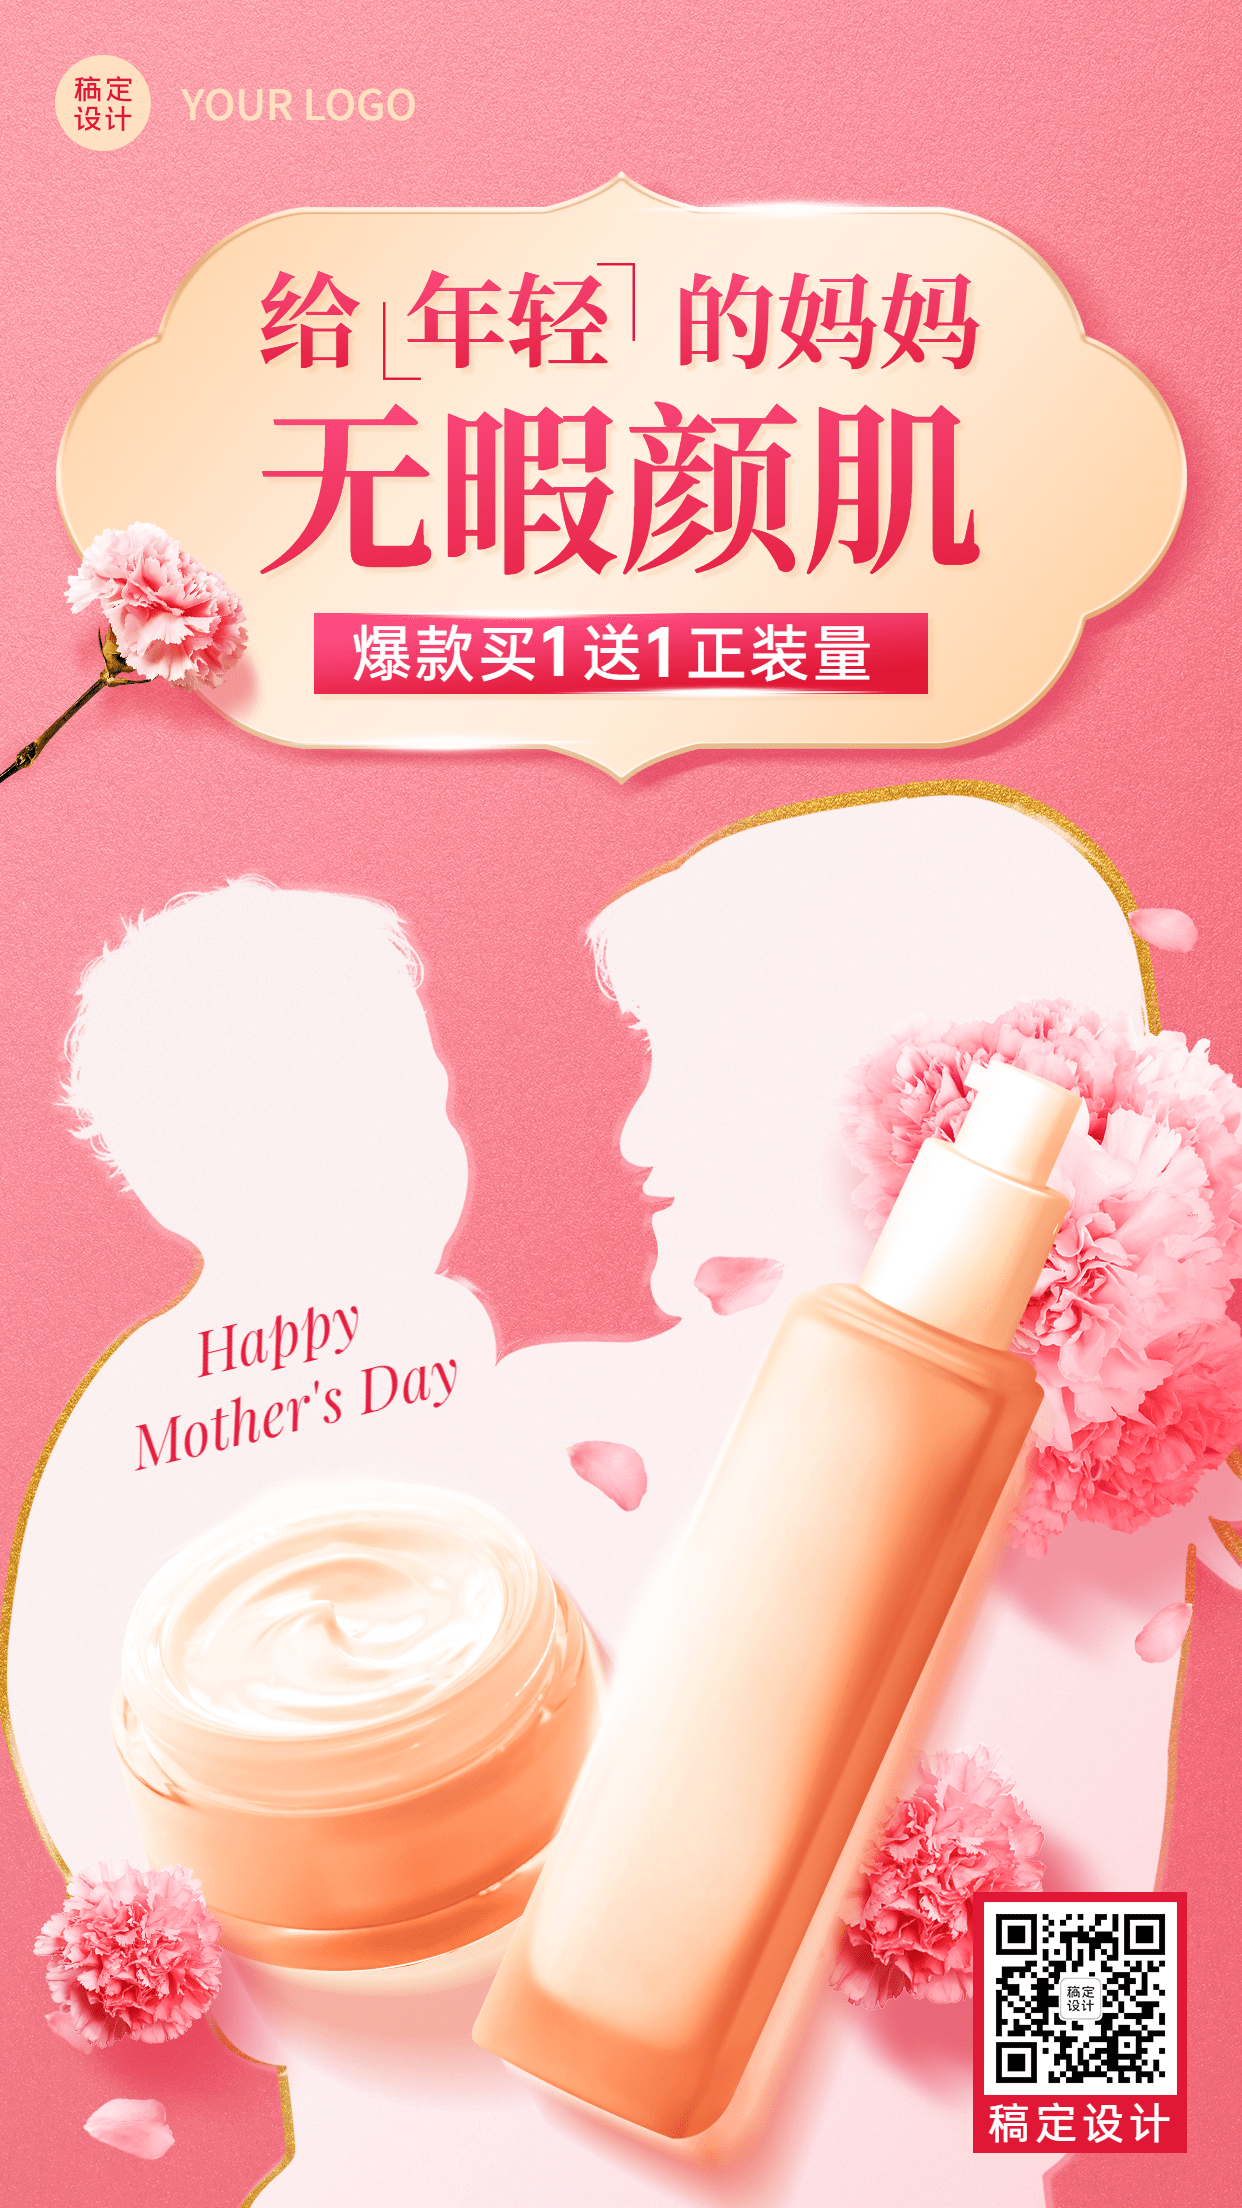 母亲节节日营销合成手机海报